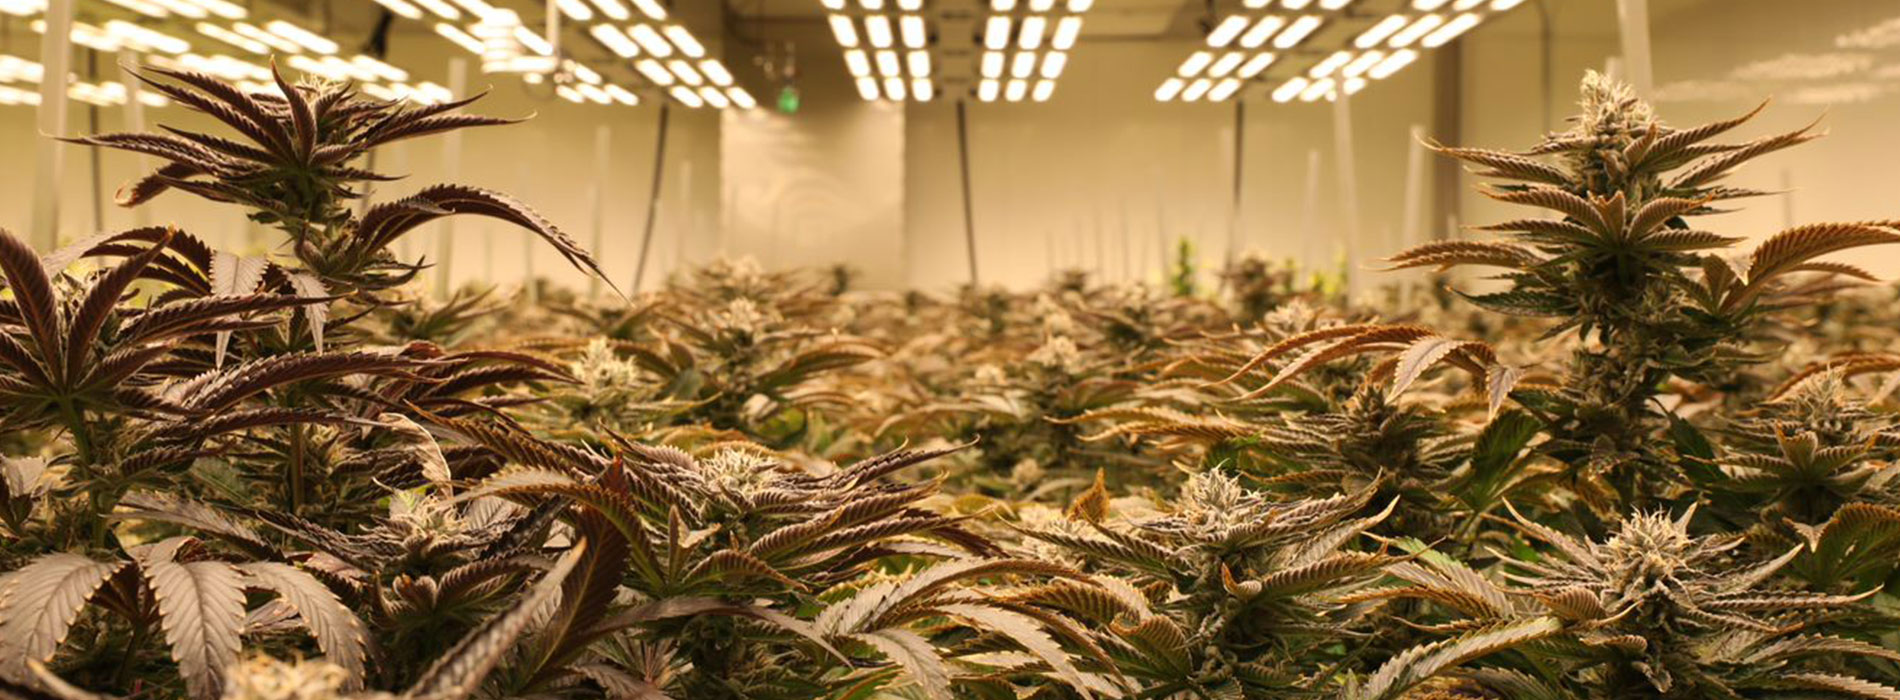 cannabis strain cultivation facility